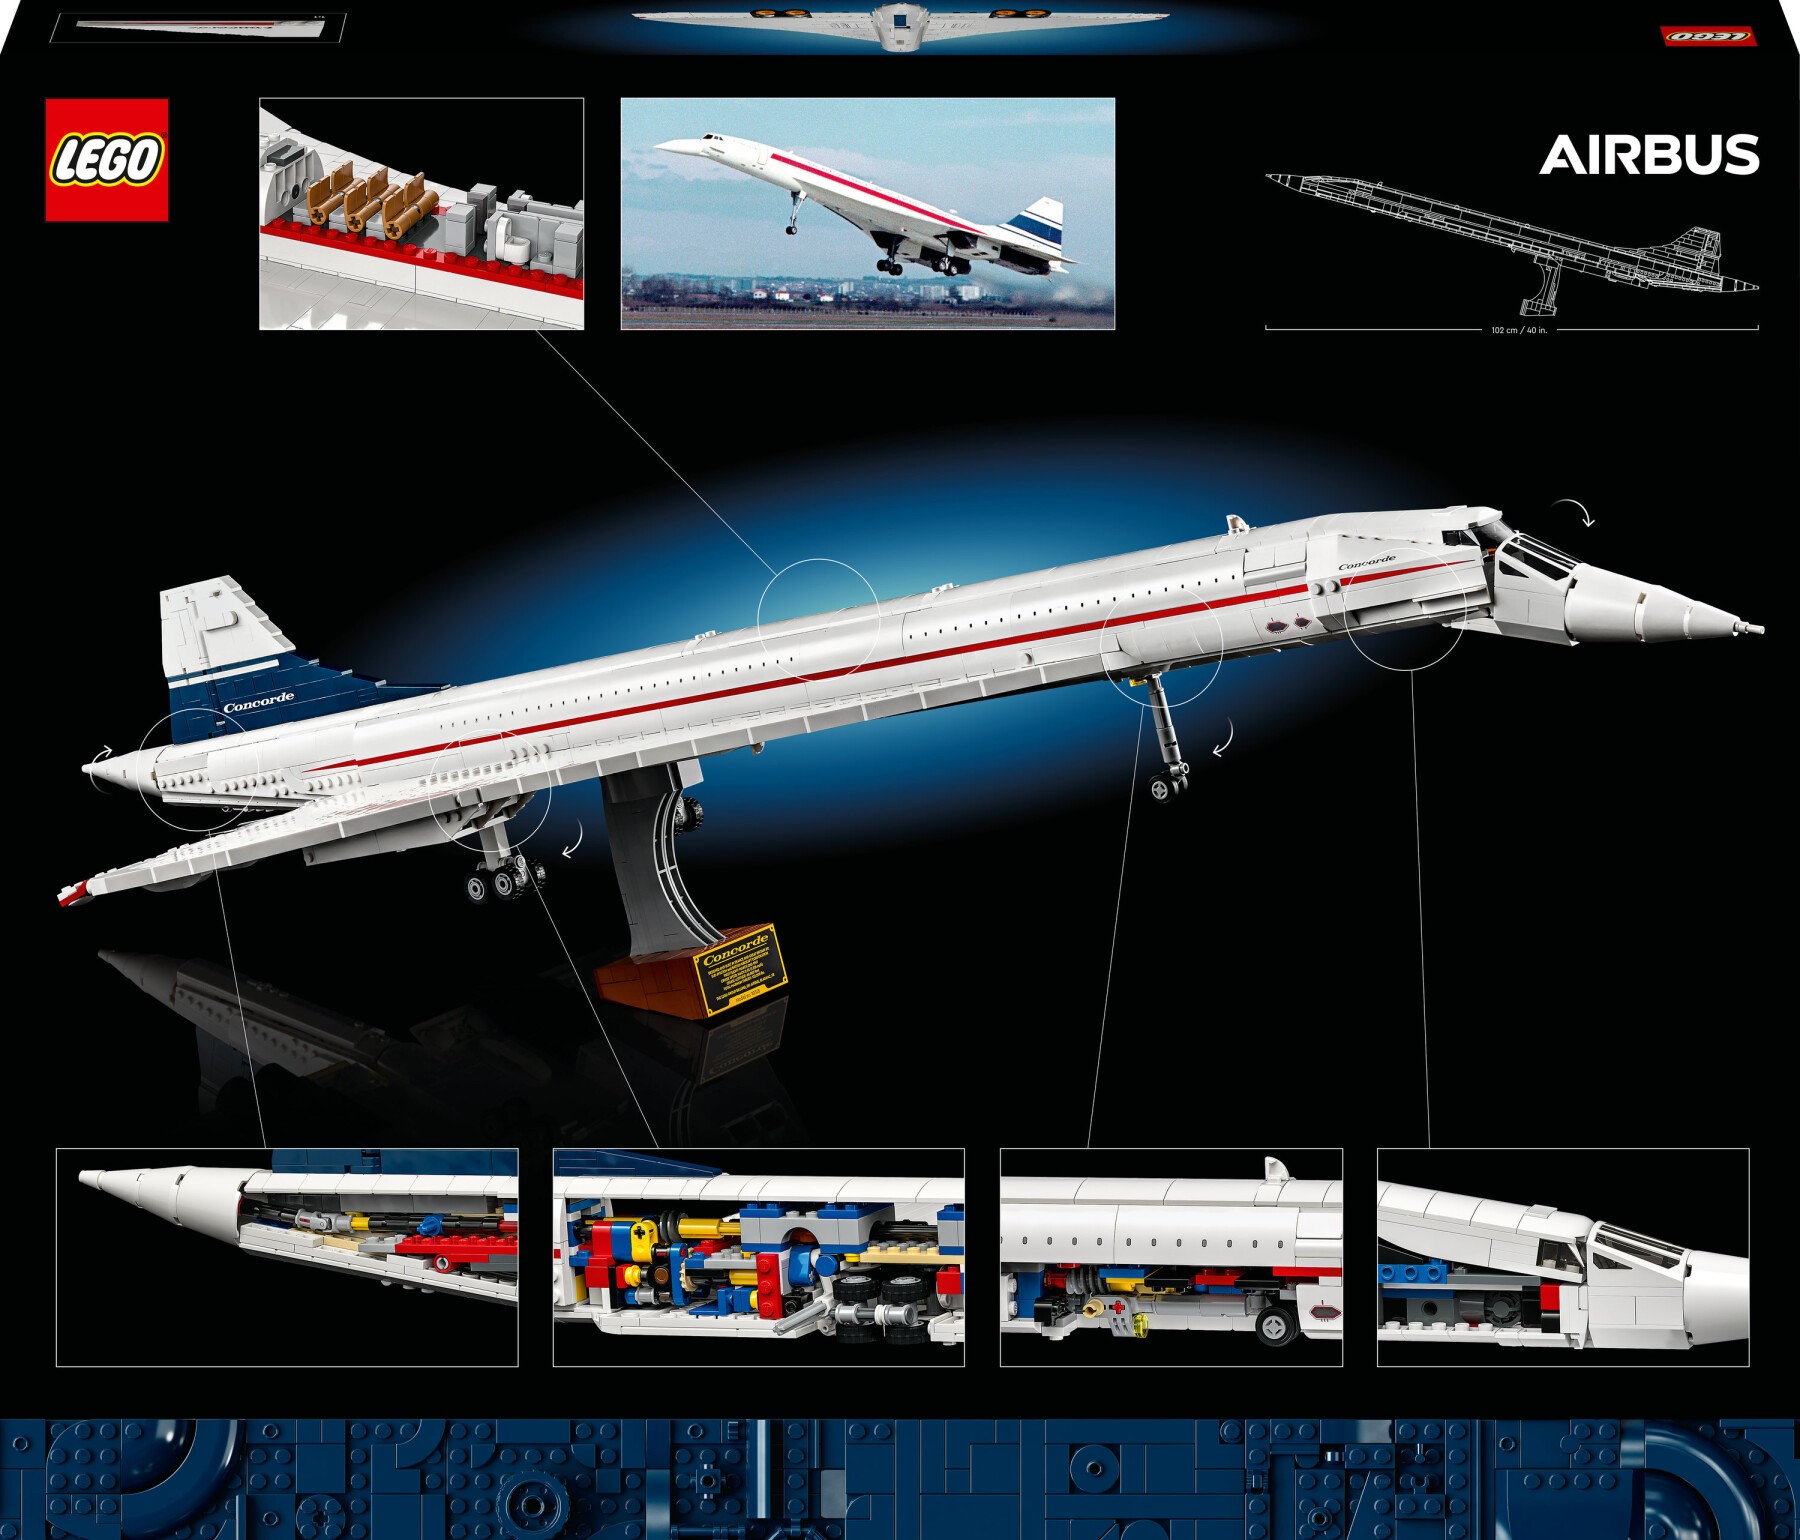 Lego icons 10318 concorde kit modellismo da costruire per adulti, iconico modellino di aereo passeggeri, regalo uomo o donna - Lego, LEGO ICONS